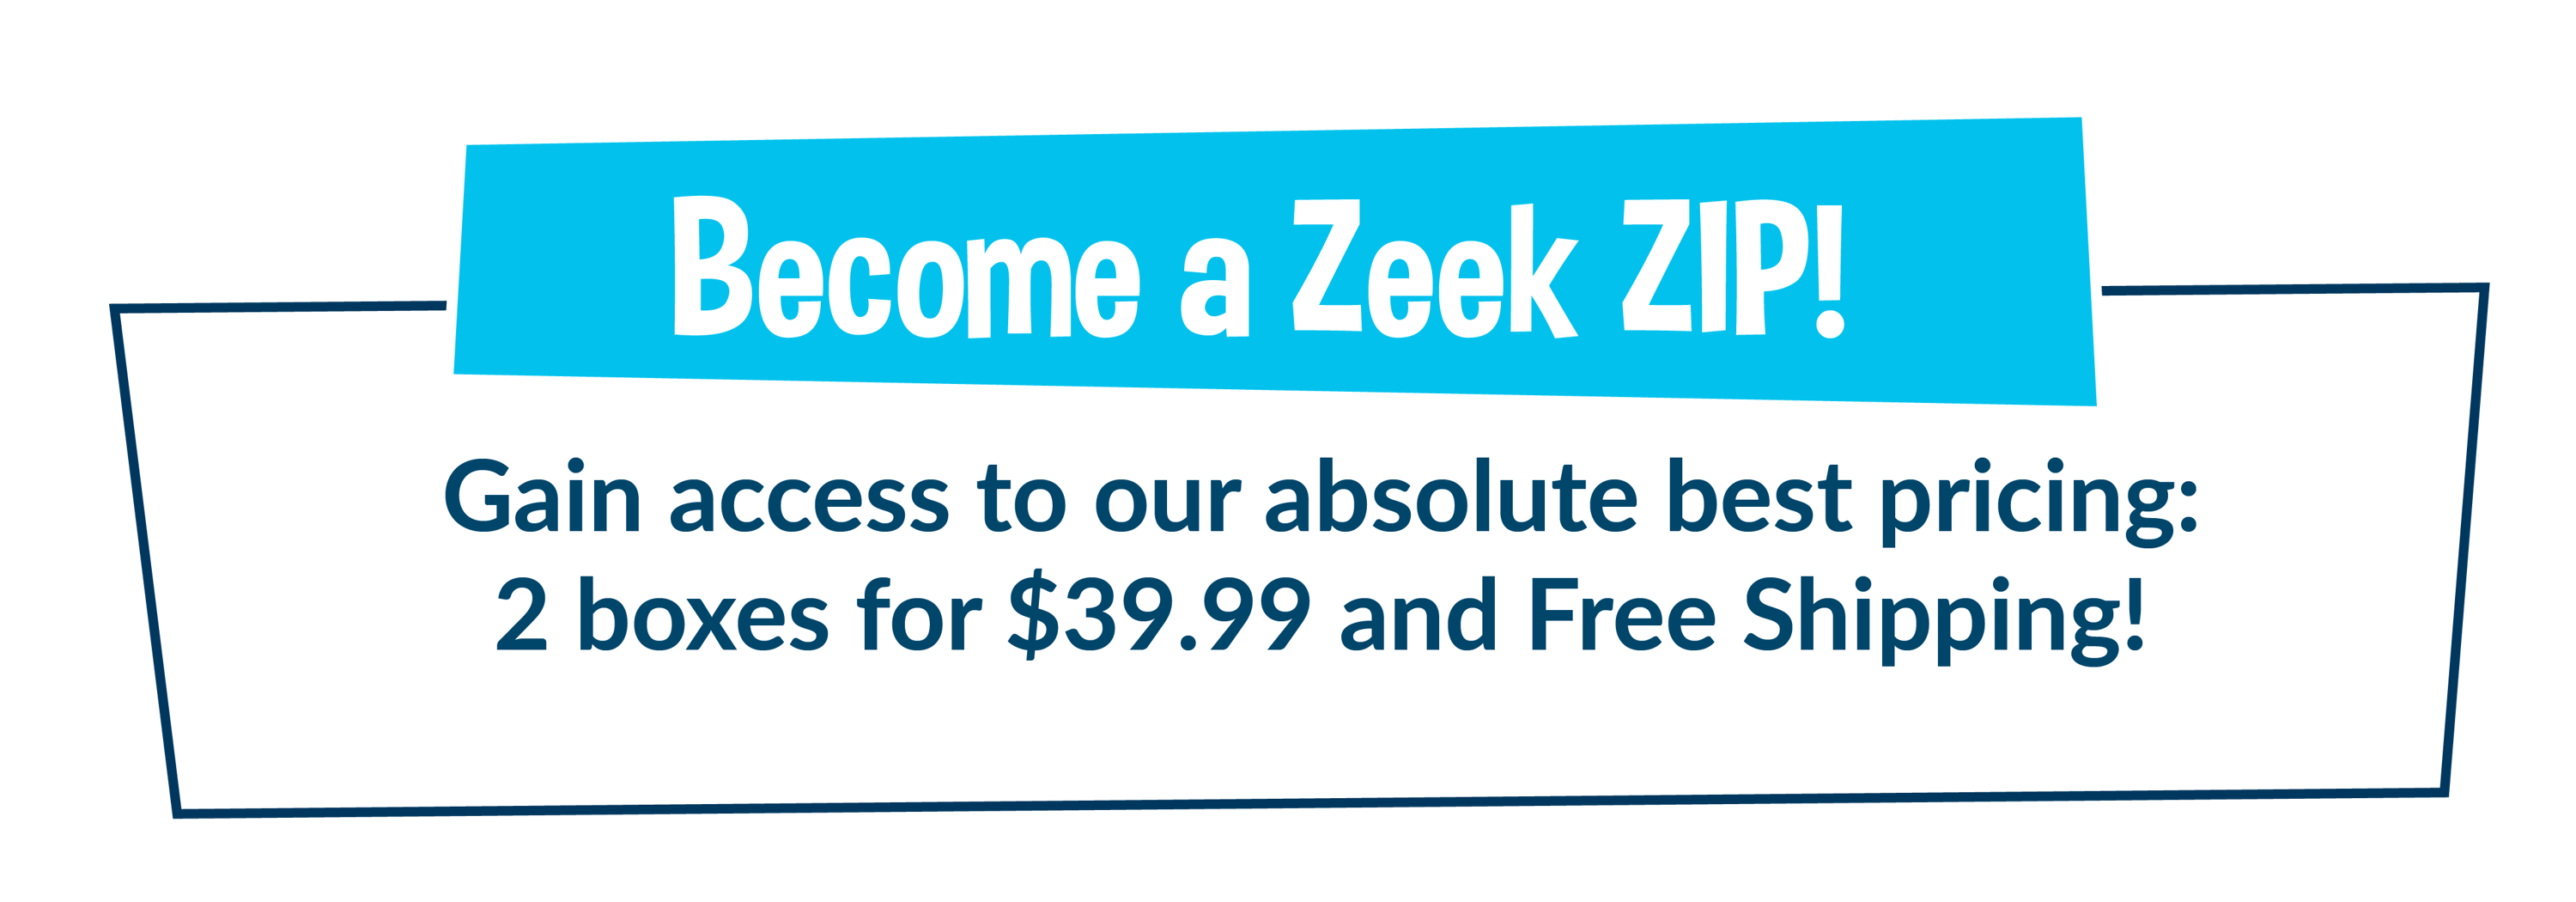 Become a Zeek Bar ZIP!